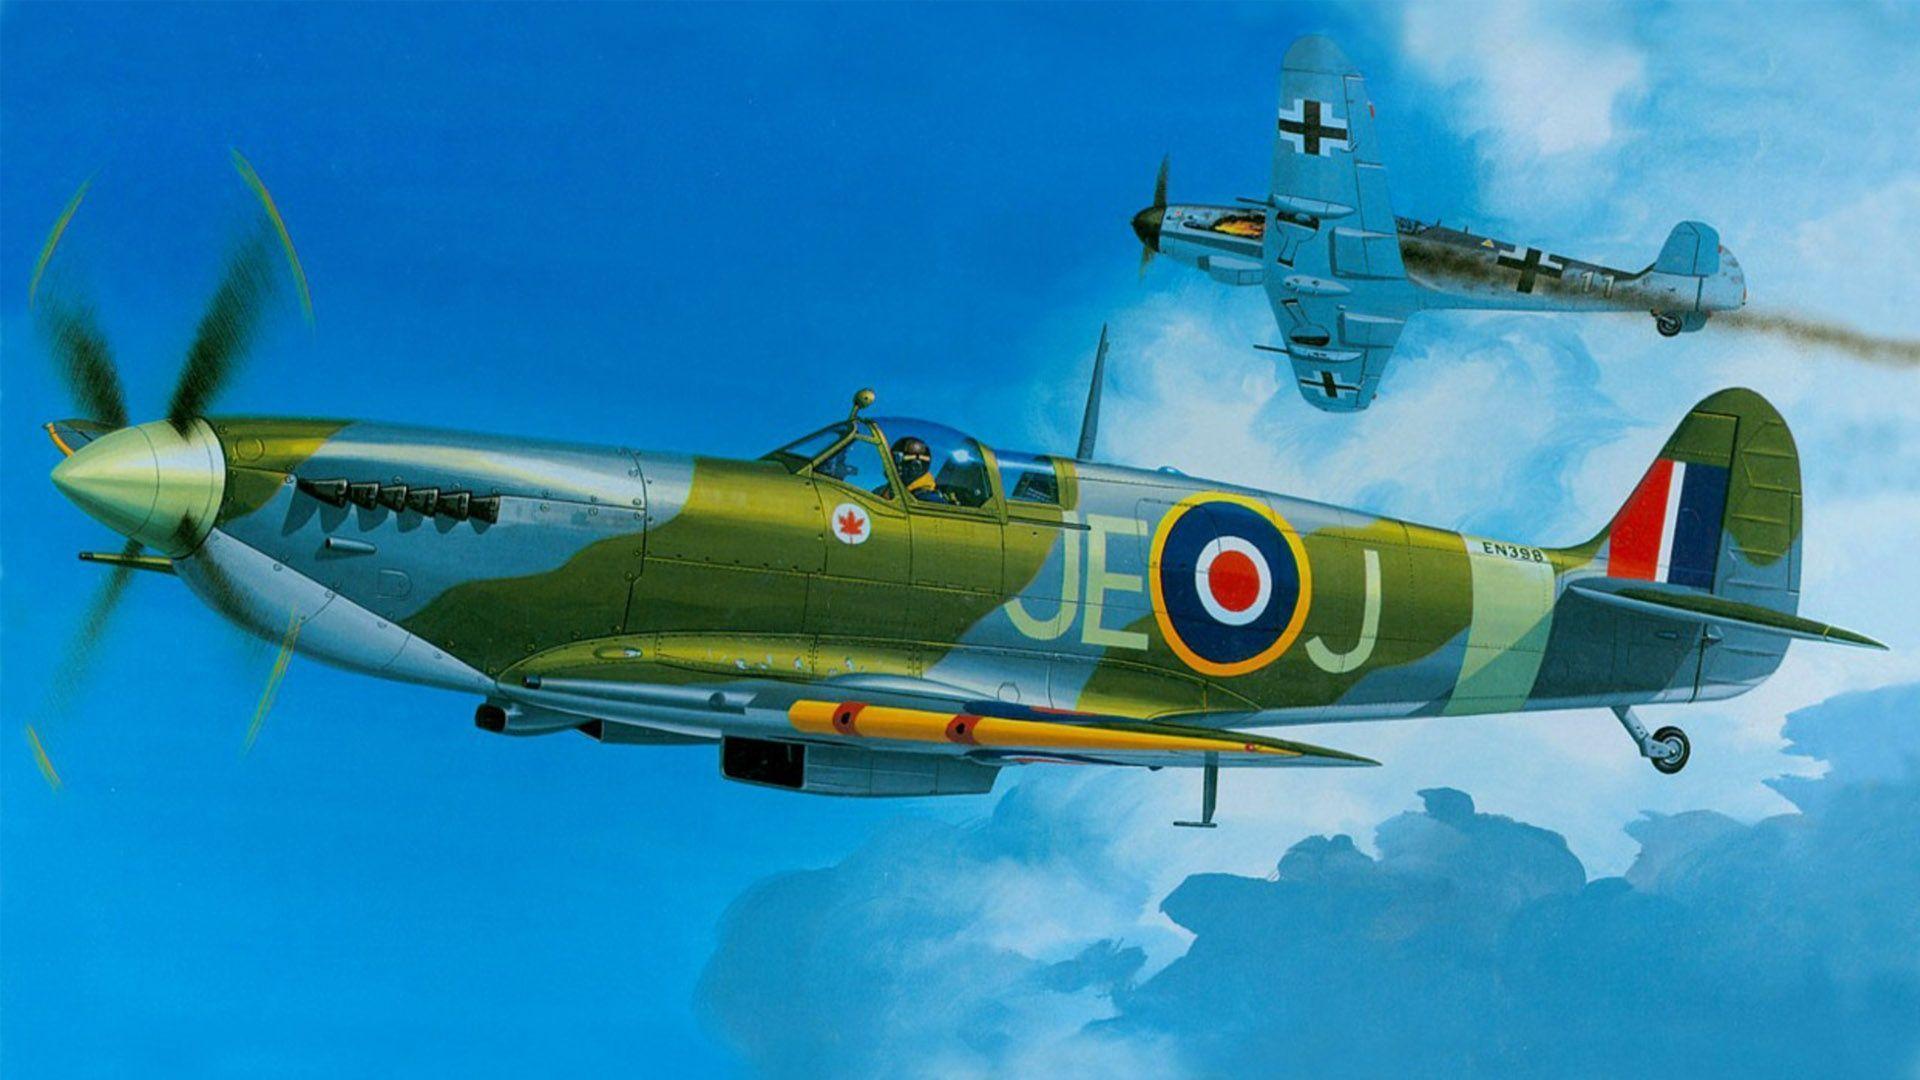 Supermarine Spitfire Wallpaper. Supermarine Spitfire Background